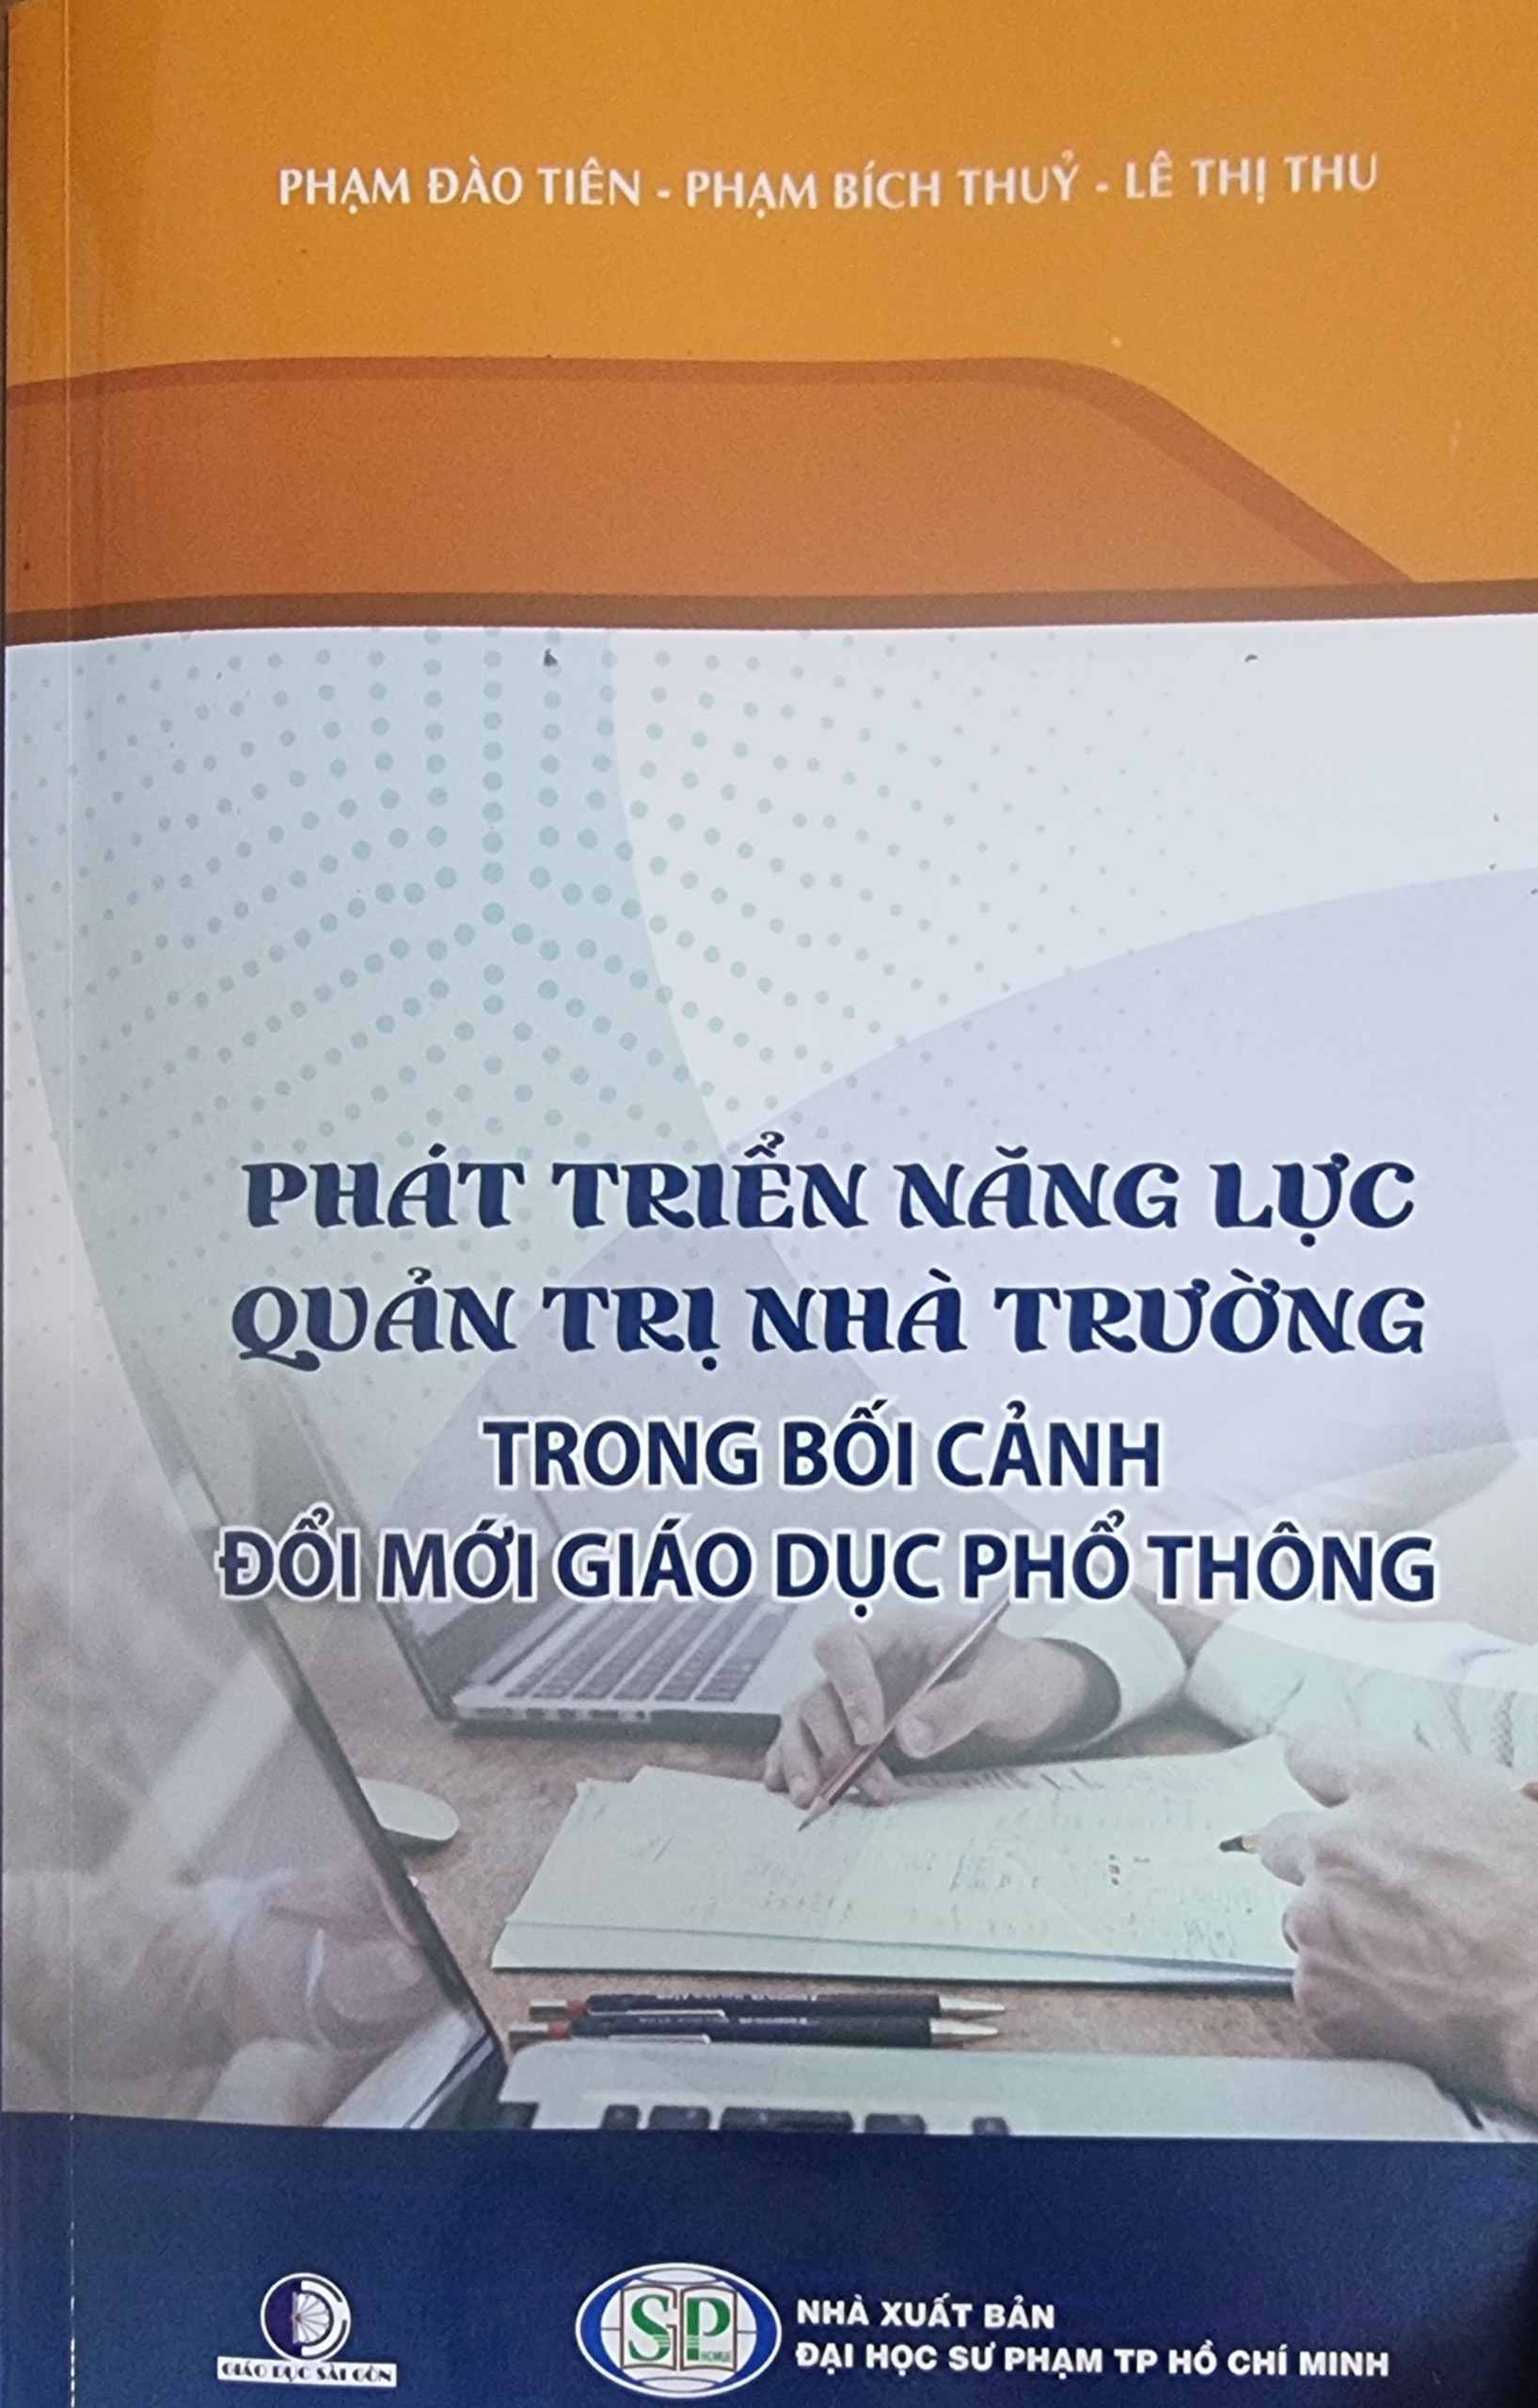 >Phạm Đào Tiên, Phạm Bích Thủy, Lê Thị Thu